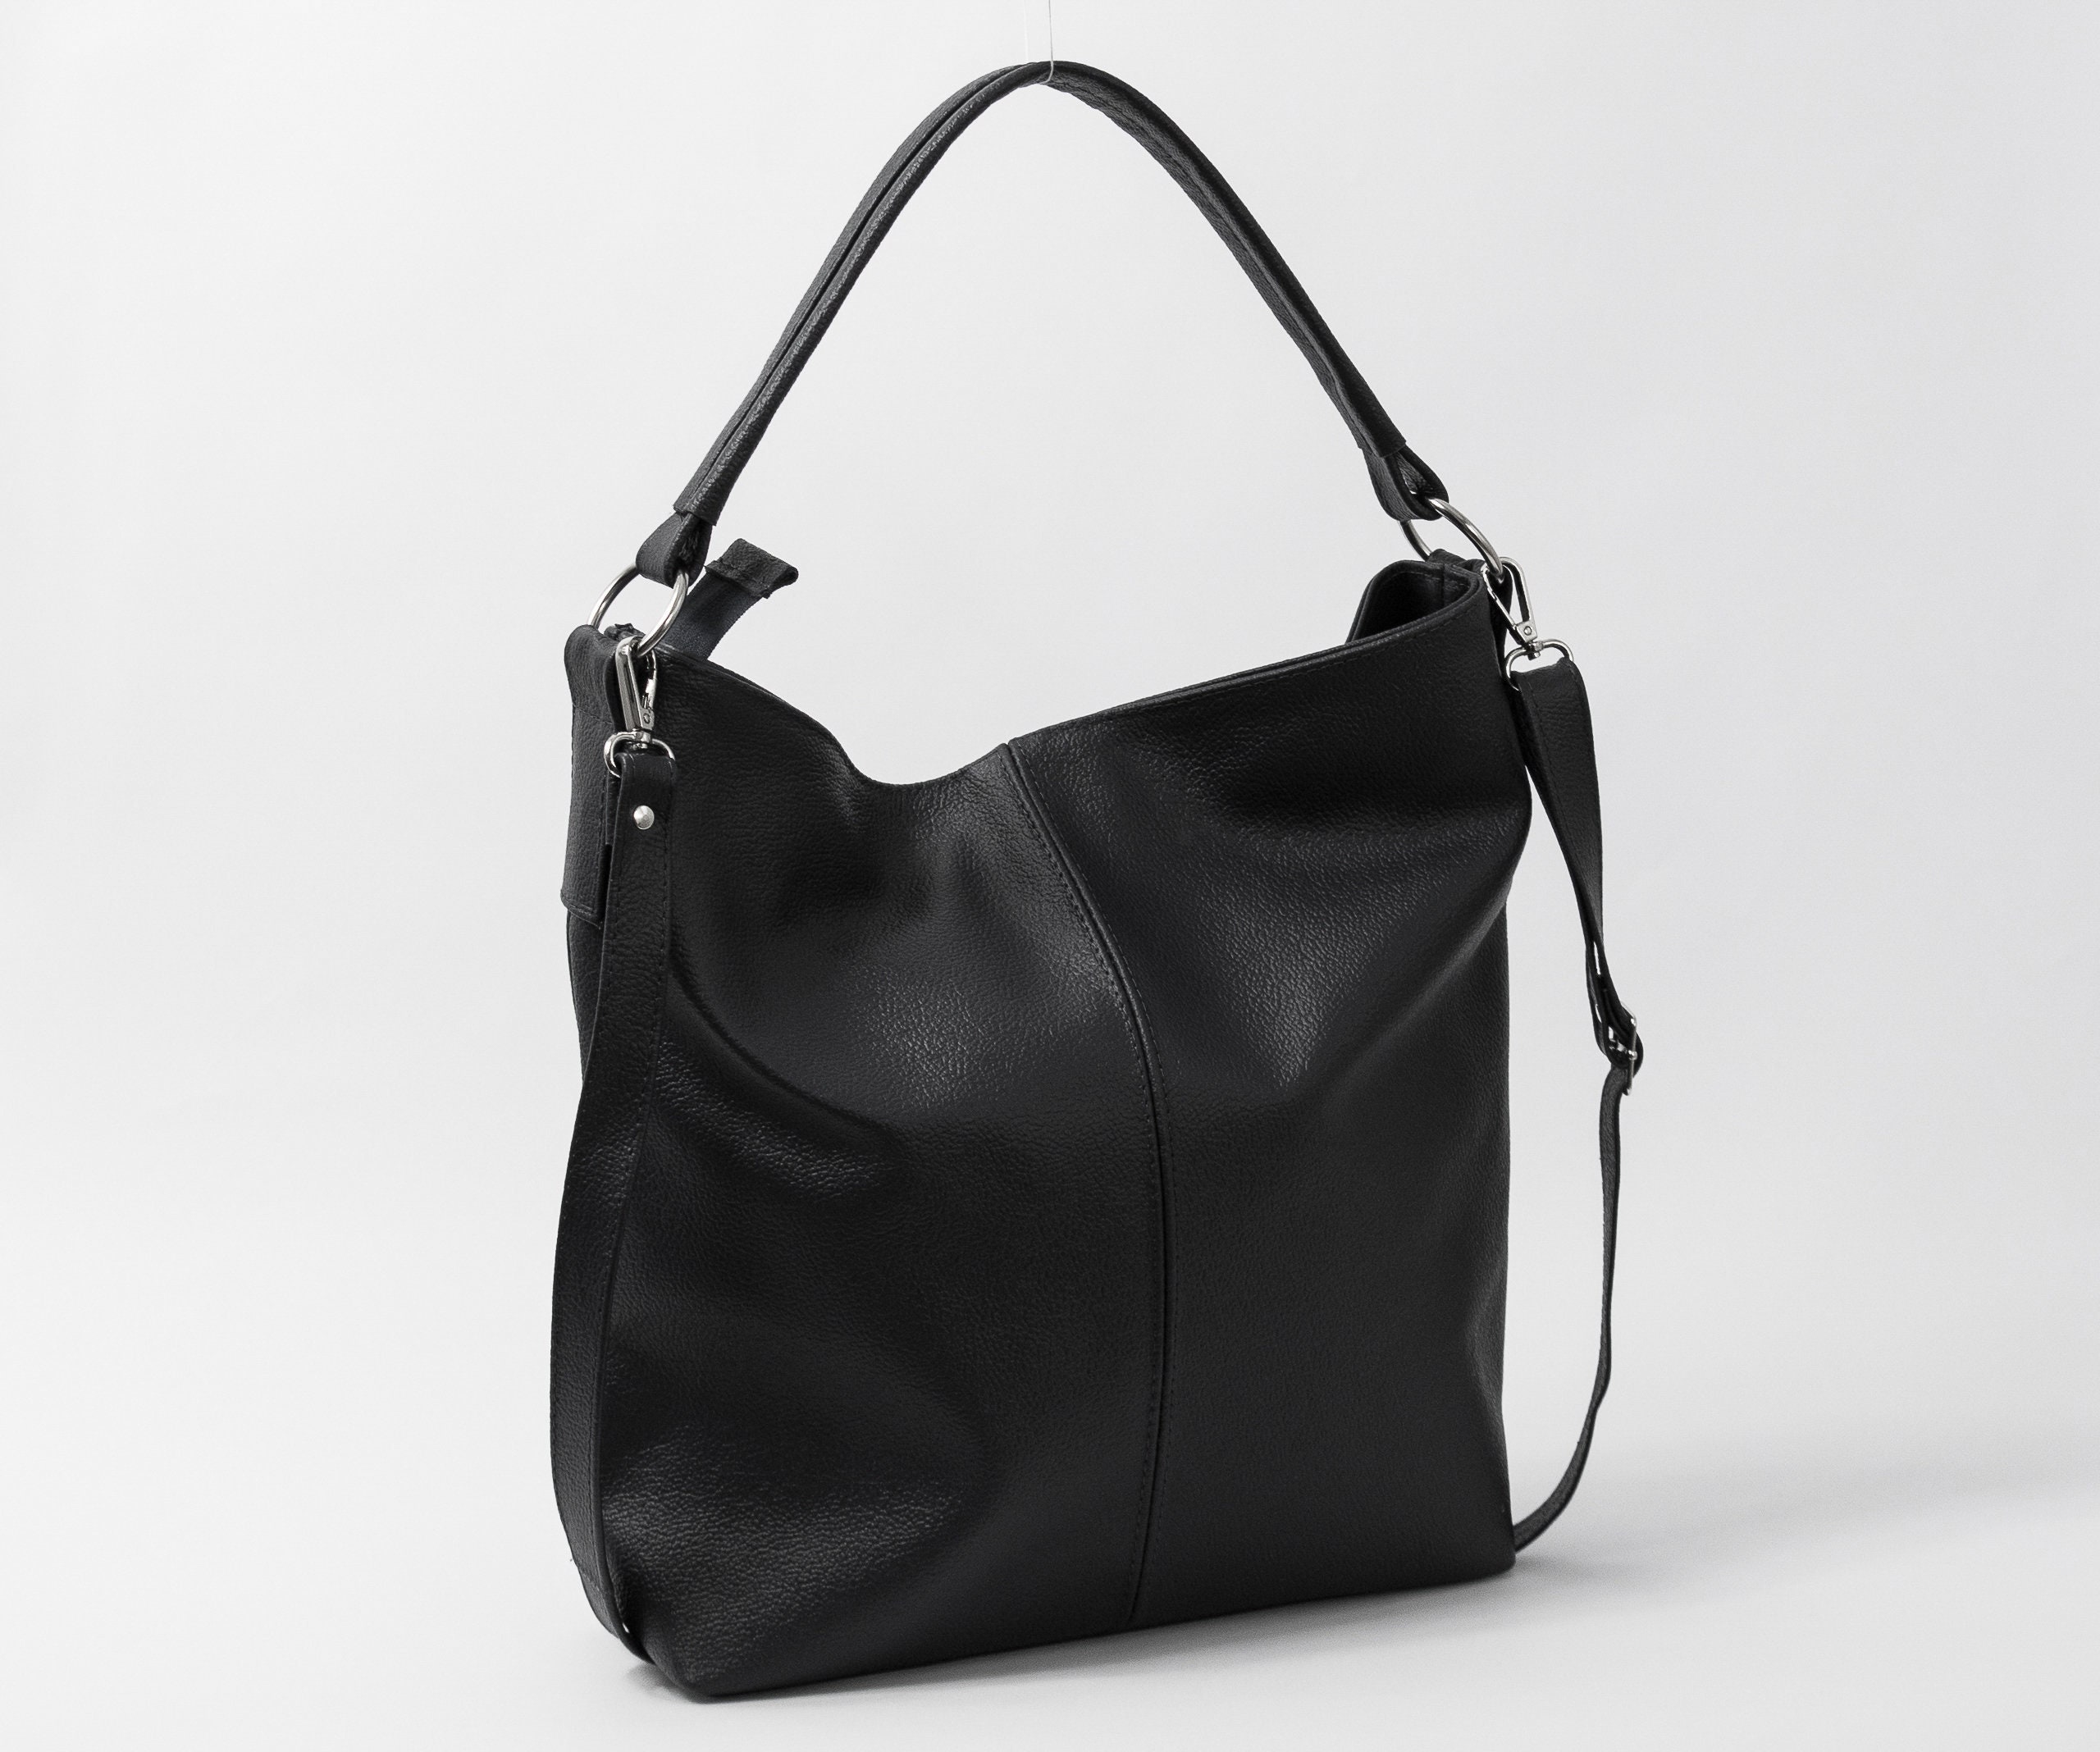 Leather Hobo Bag, Black Handbag, Crossbody Everyday Tote Laptop Shoulder Gift For Her, Hb